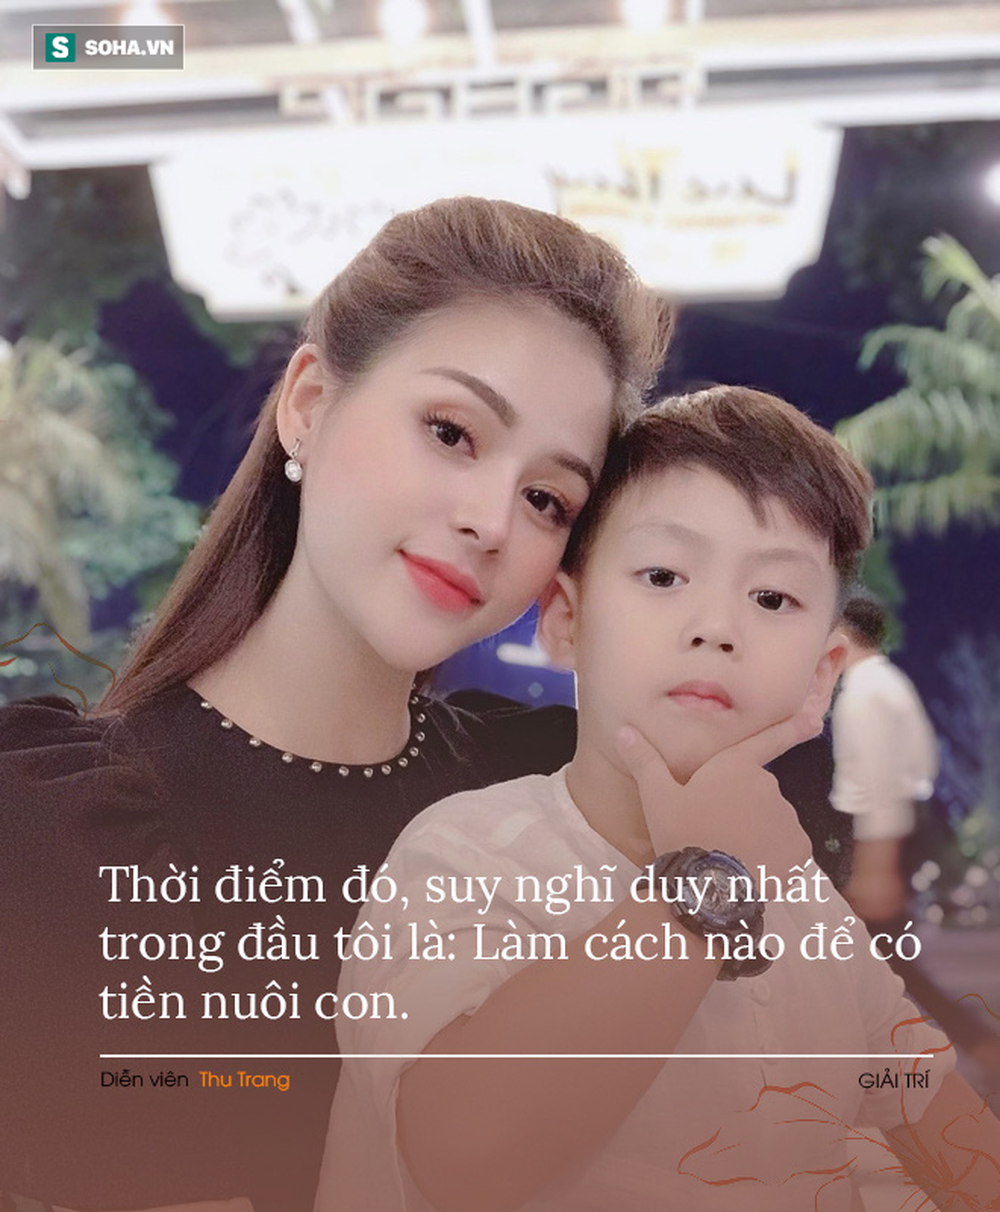 Diễn viên Lương Thu Trang: Nhiều người bảo tôi ngu vì toàn yêu những người chẳng giàu có gì - Ảnh 4.